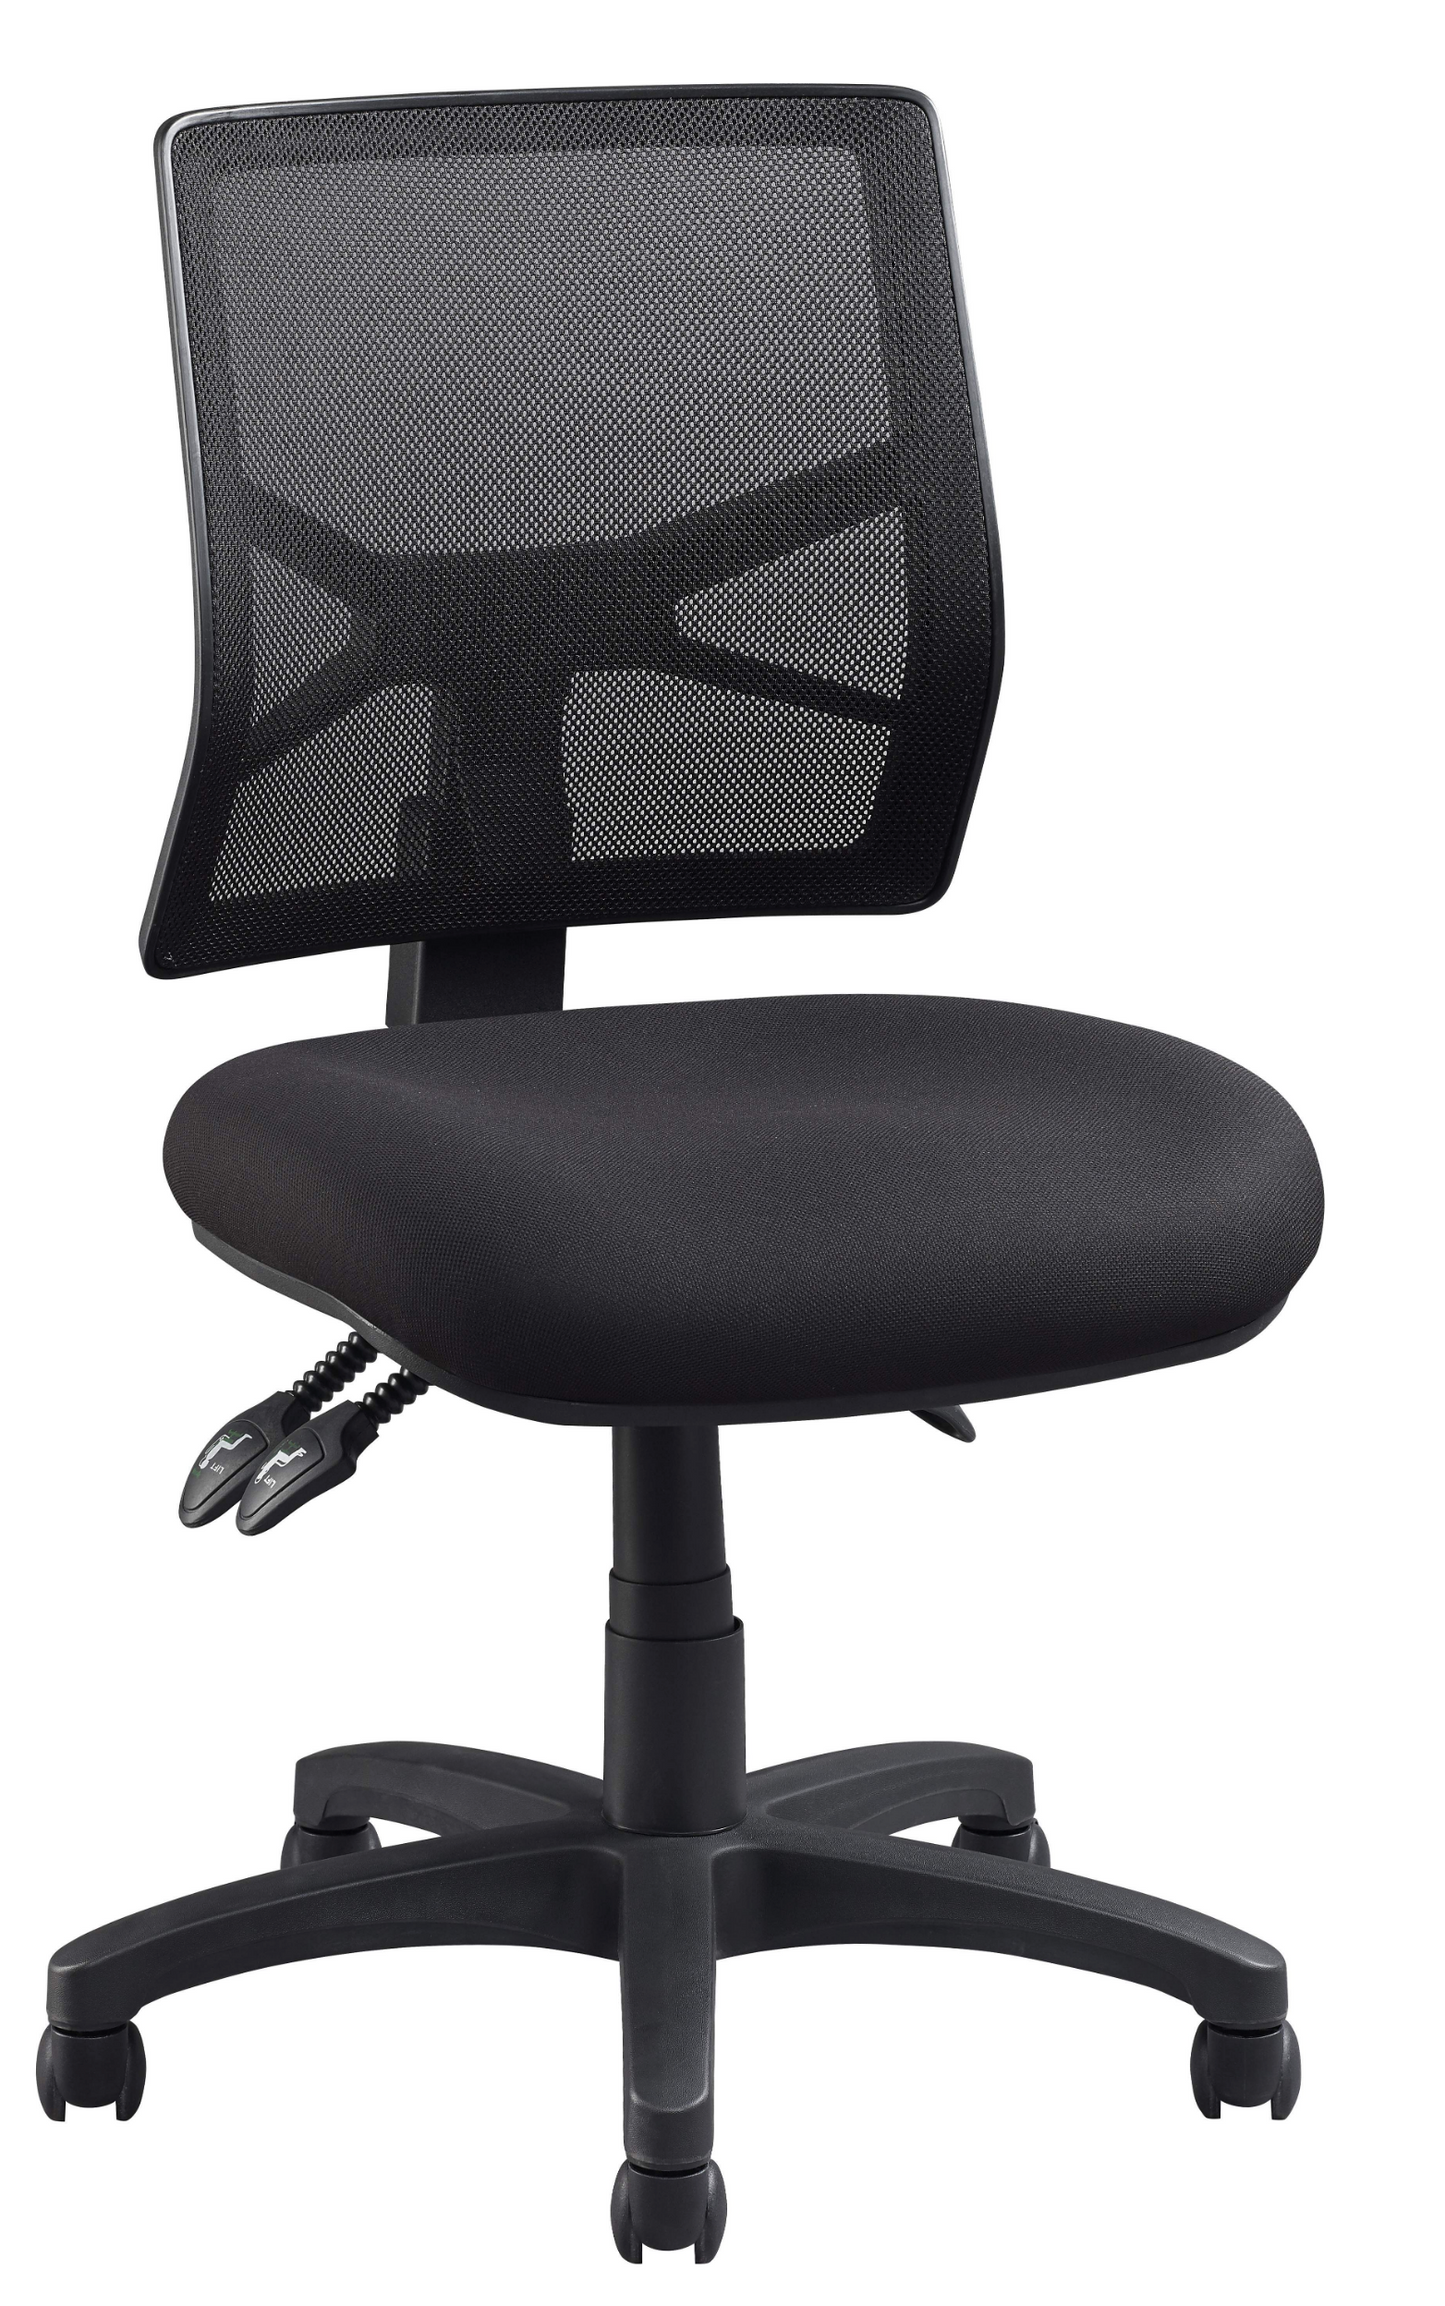 Chair - Advance Air